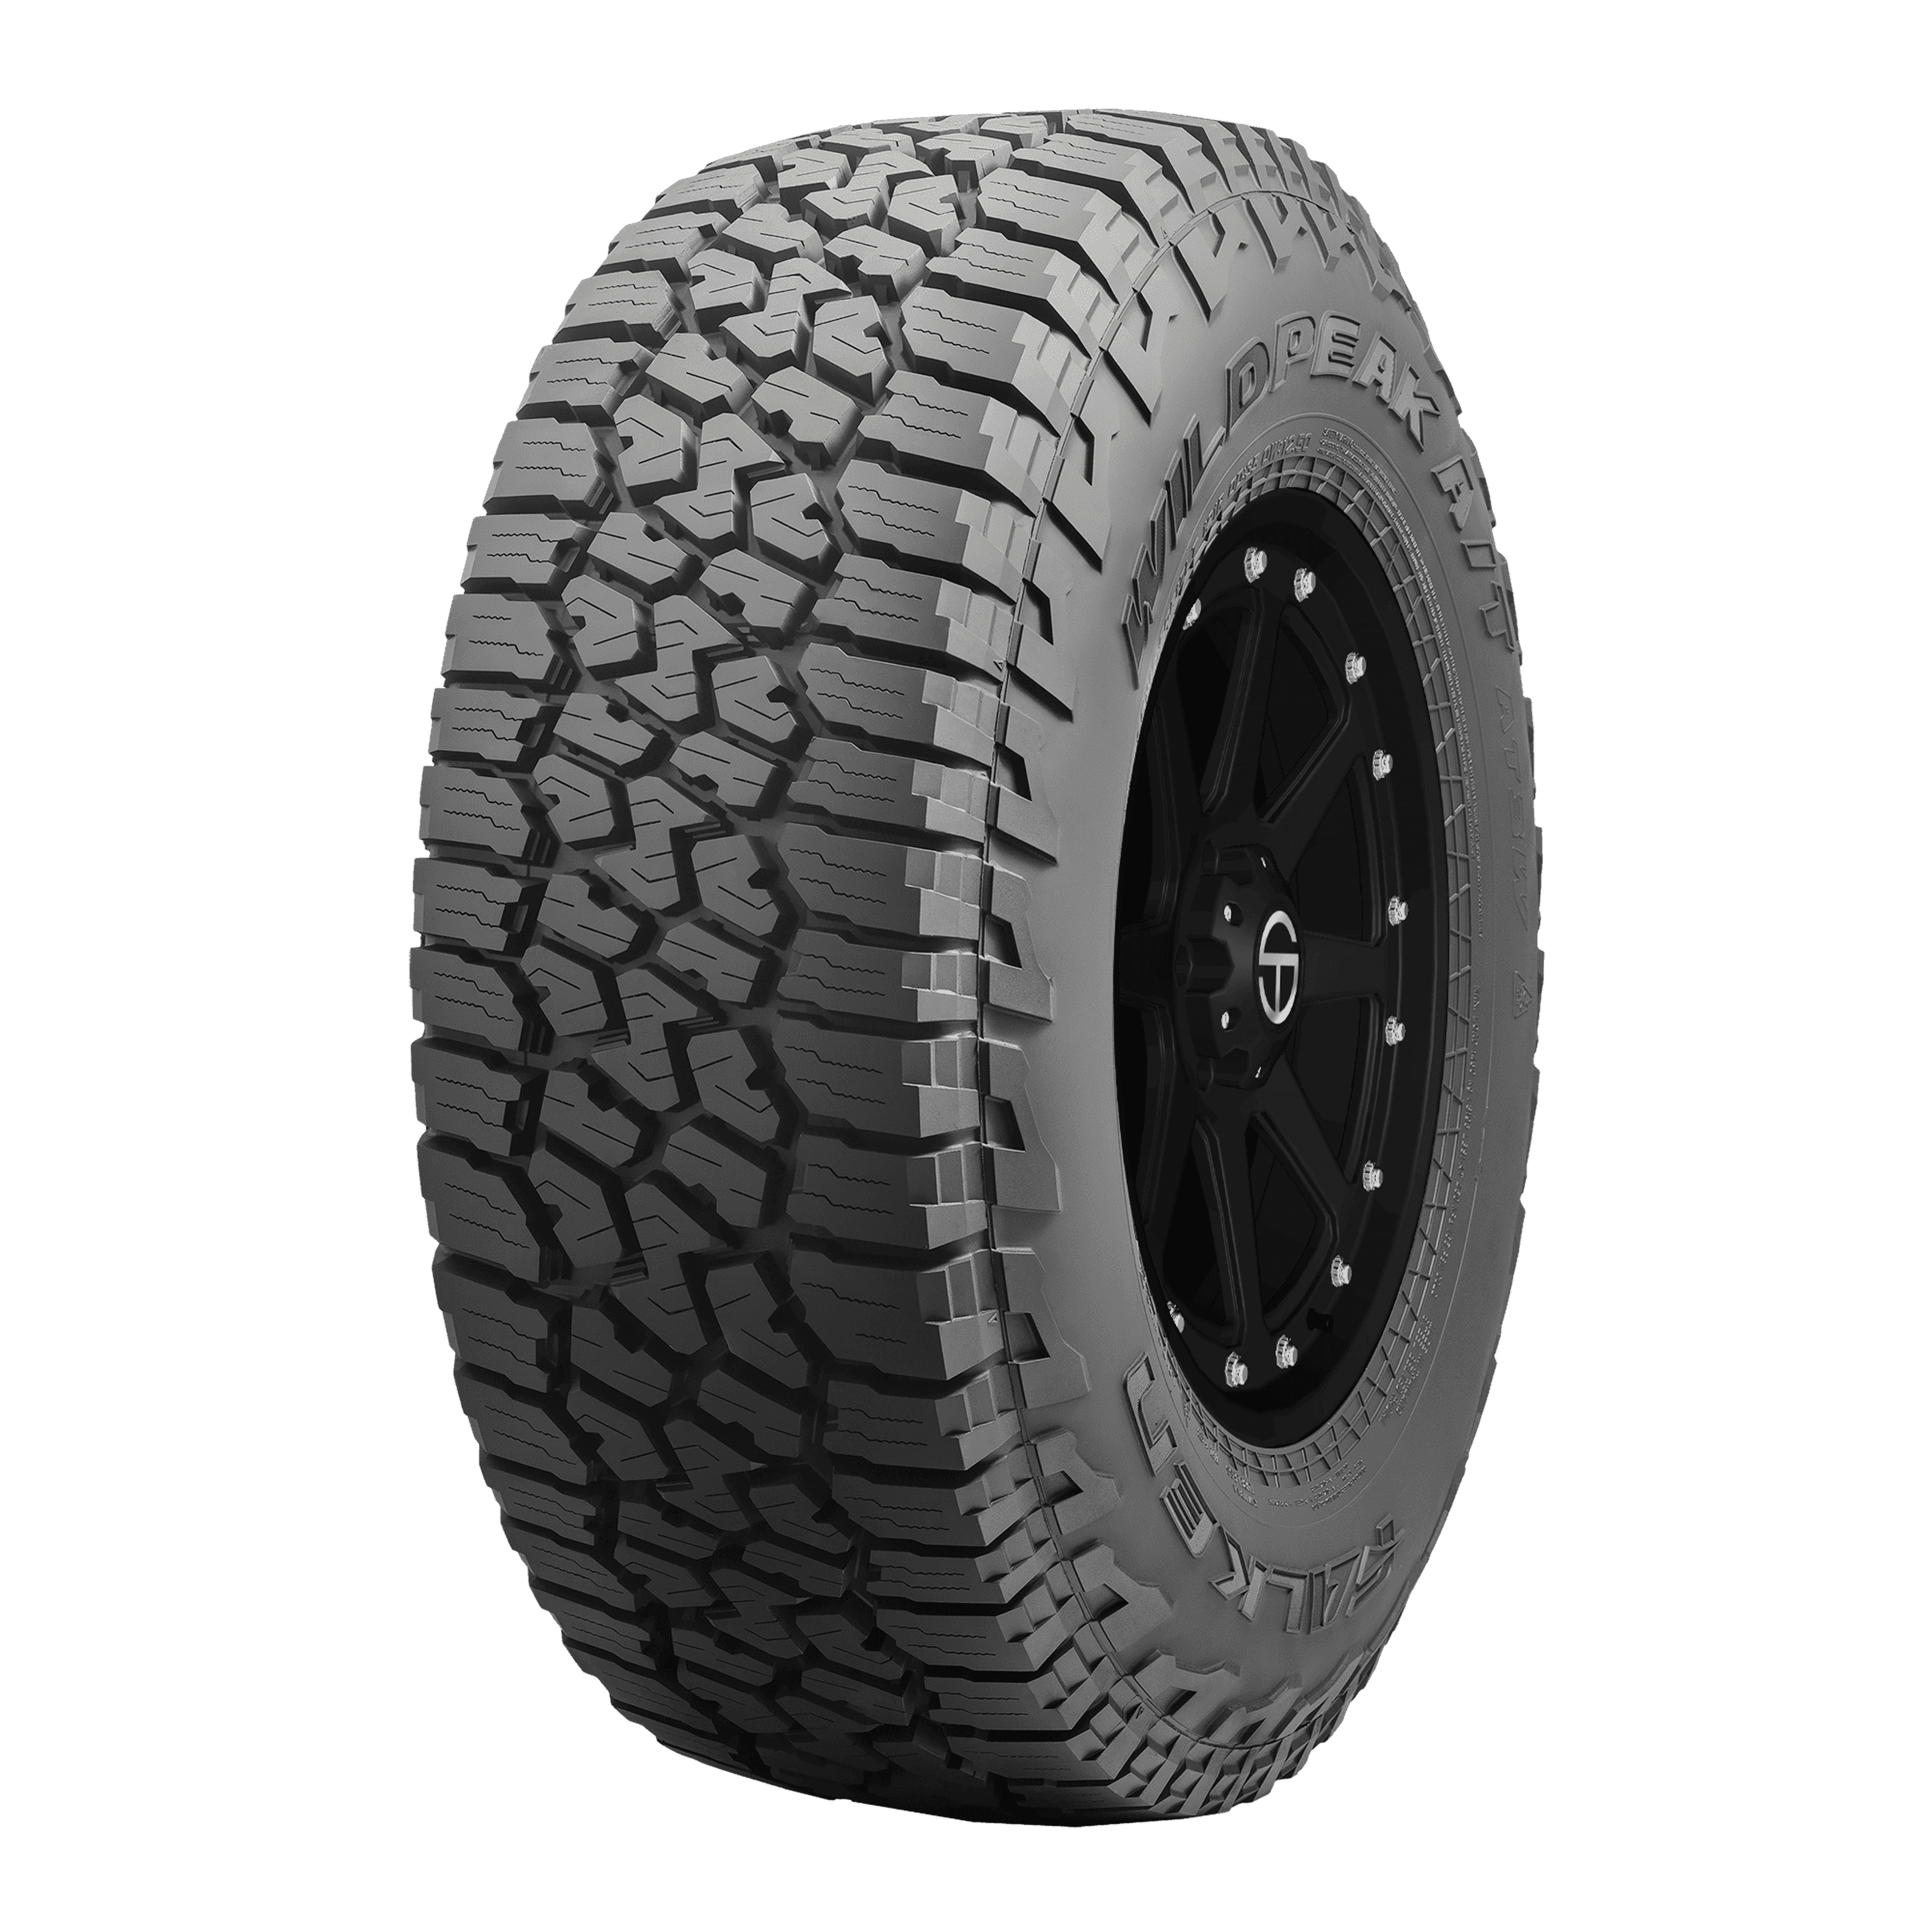 Buy Falken Wildpeak A/T3W Tires | Online SimpleTire